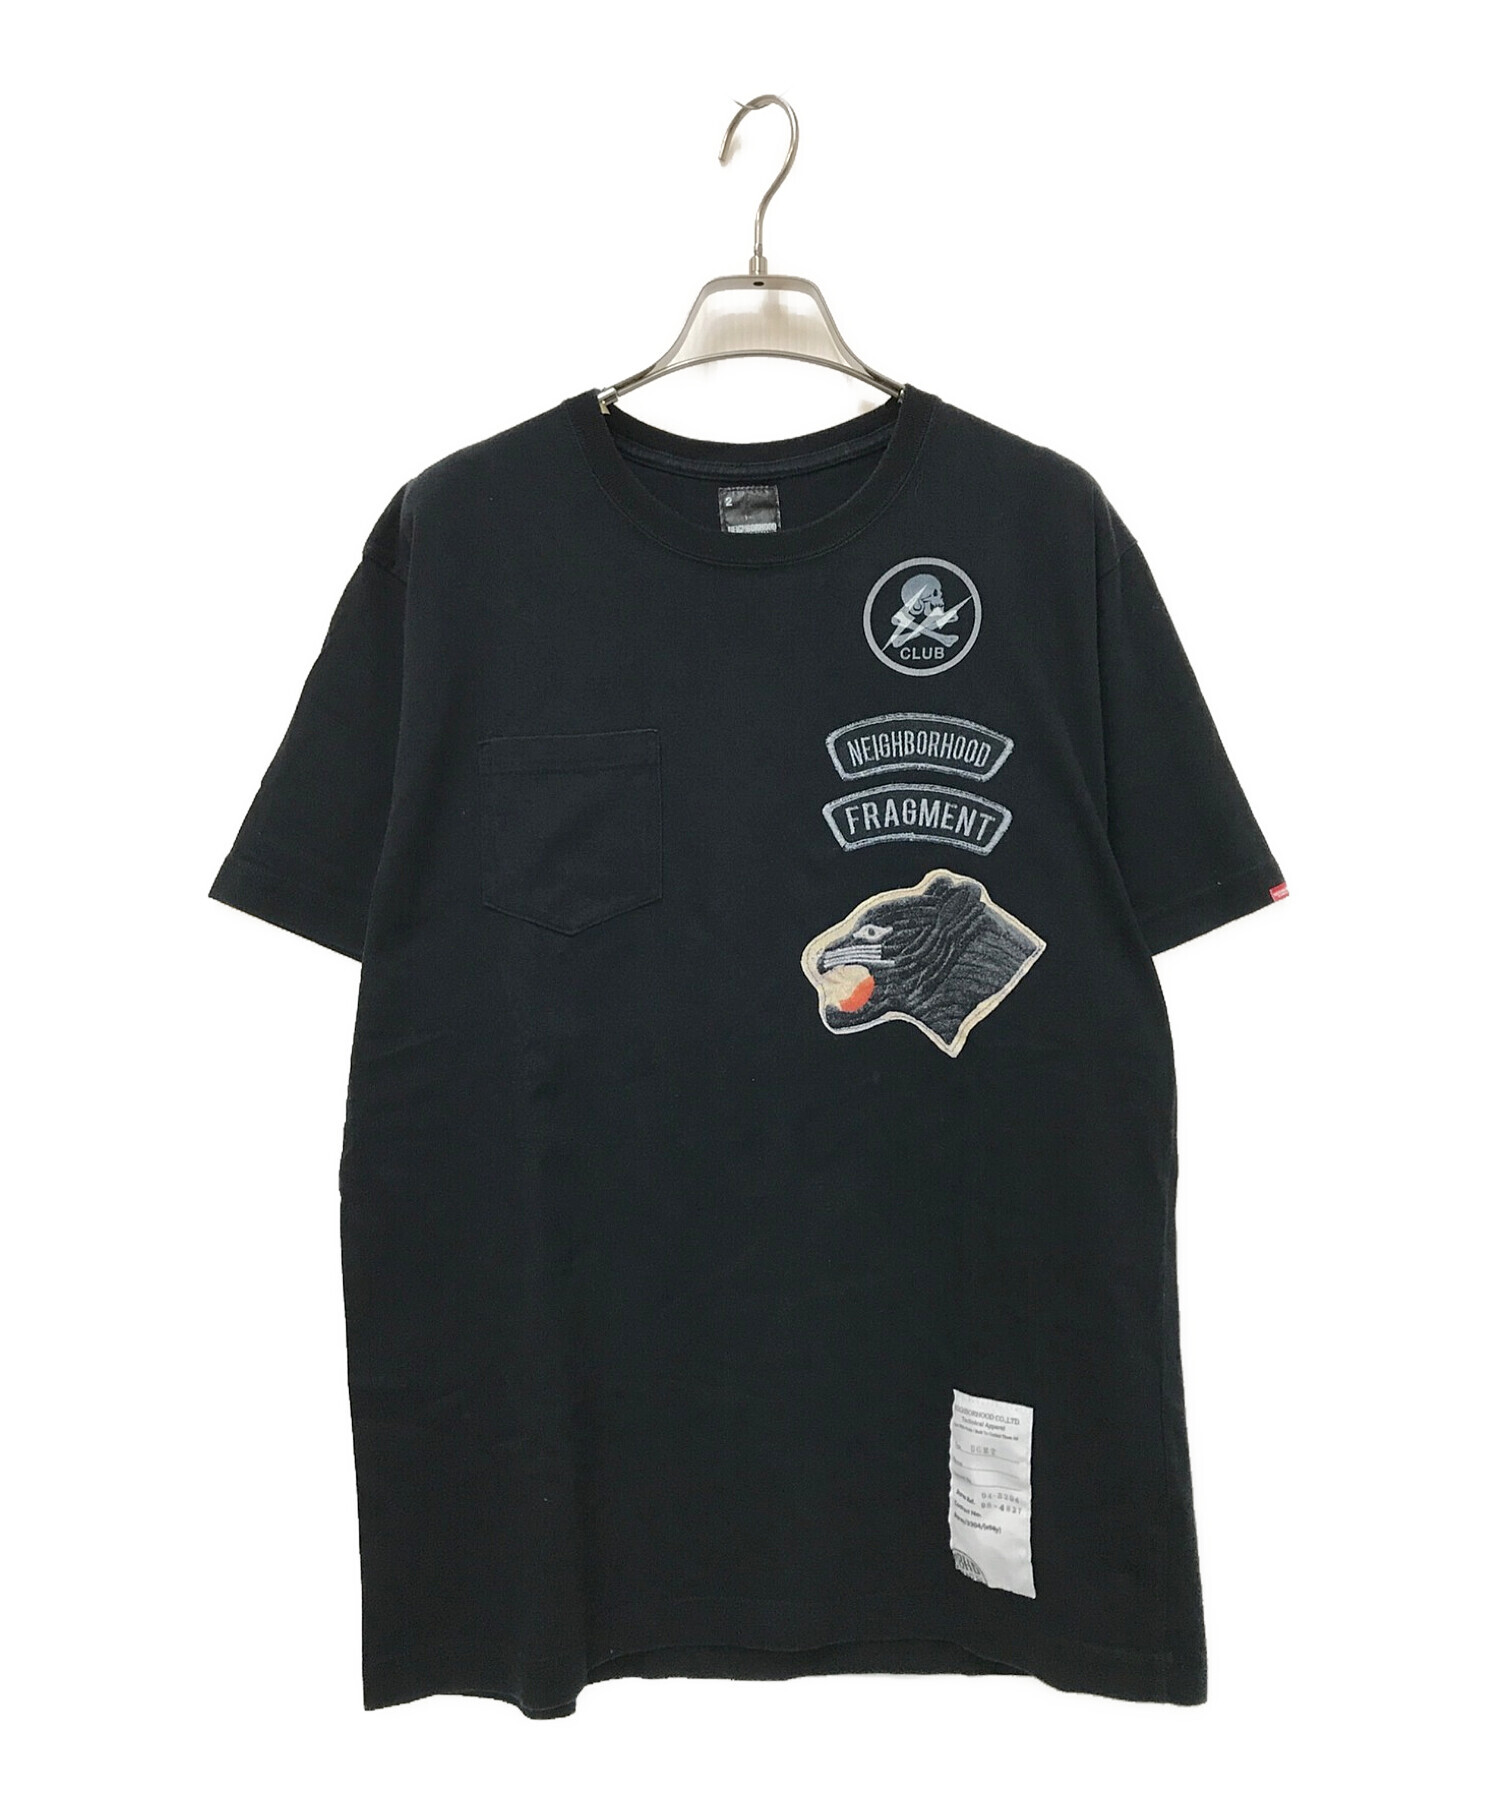 NEIGHBORHOOD (ネイバーフッド) FRAGMENTS (フラグメント) コラボプリントTシャツ ブラック サイズ:2